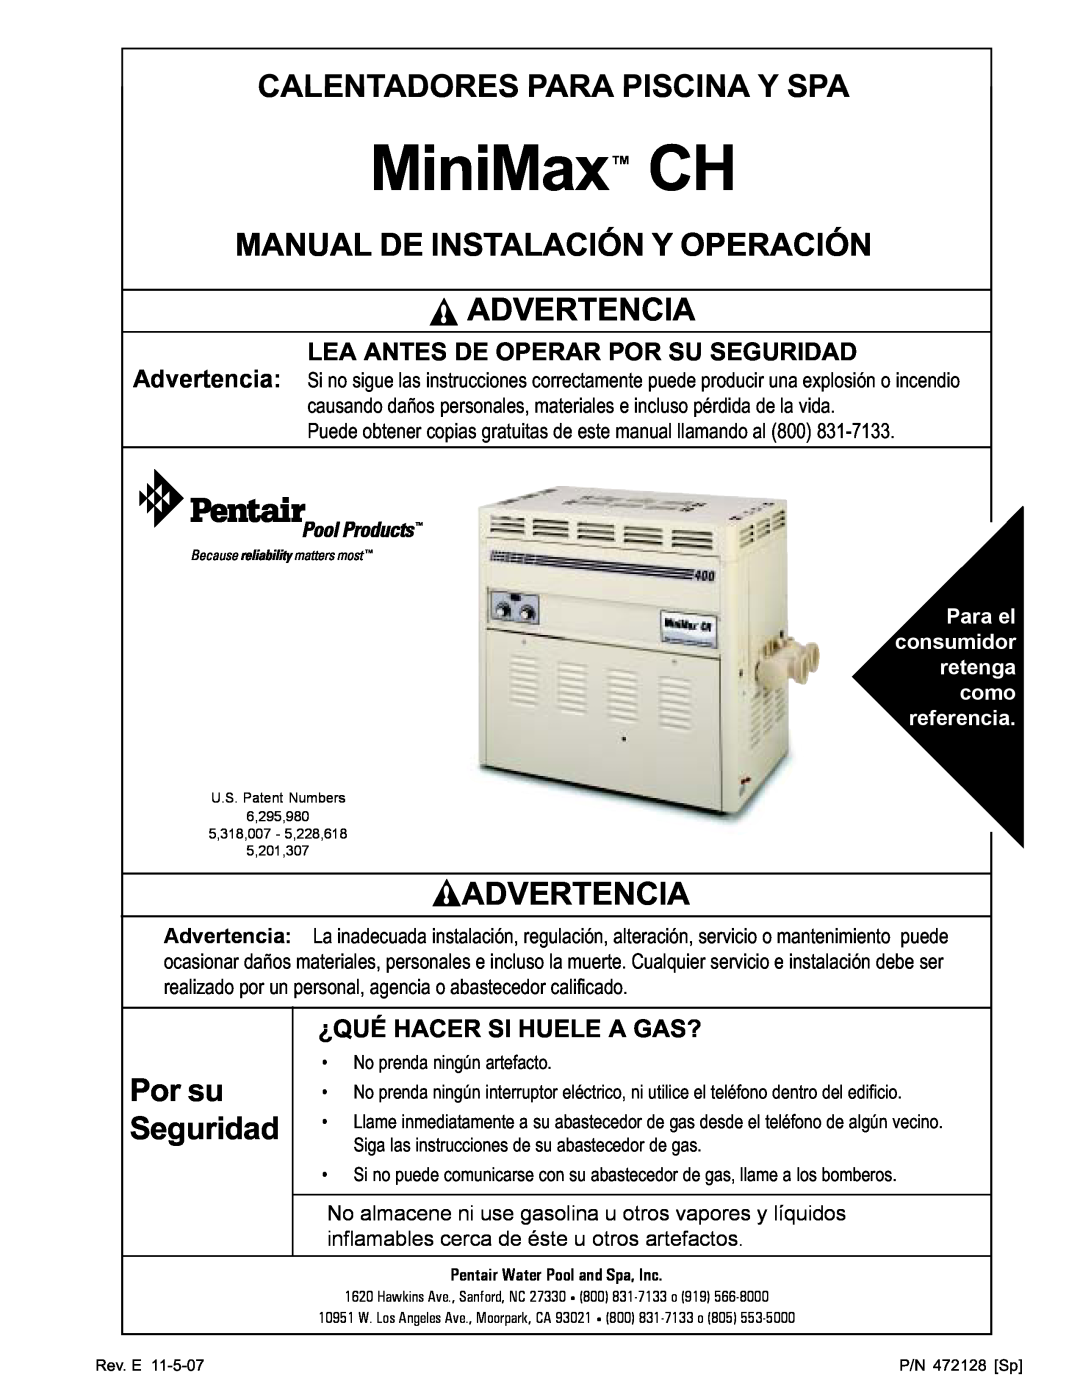 Pentair Hot Tub manual Calentadores Para Piscina Y Spa, Manual De Instalación Y Operación Advertencia, Por su Seguridad 